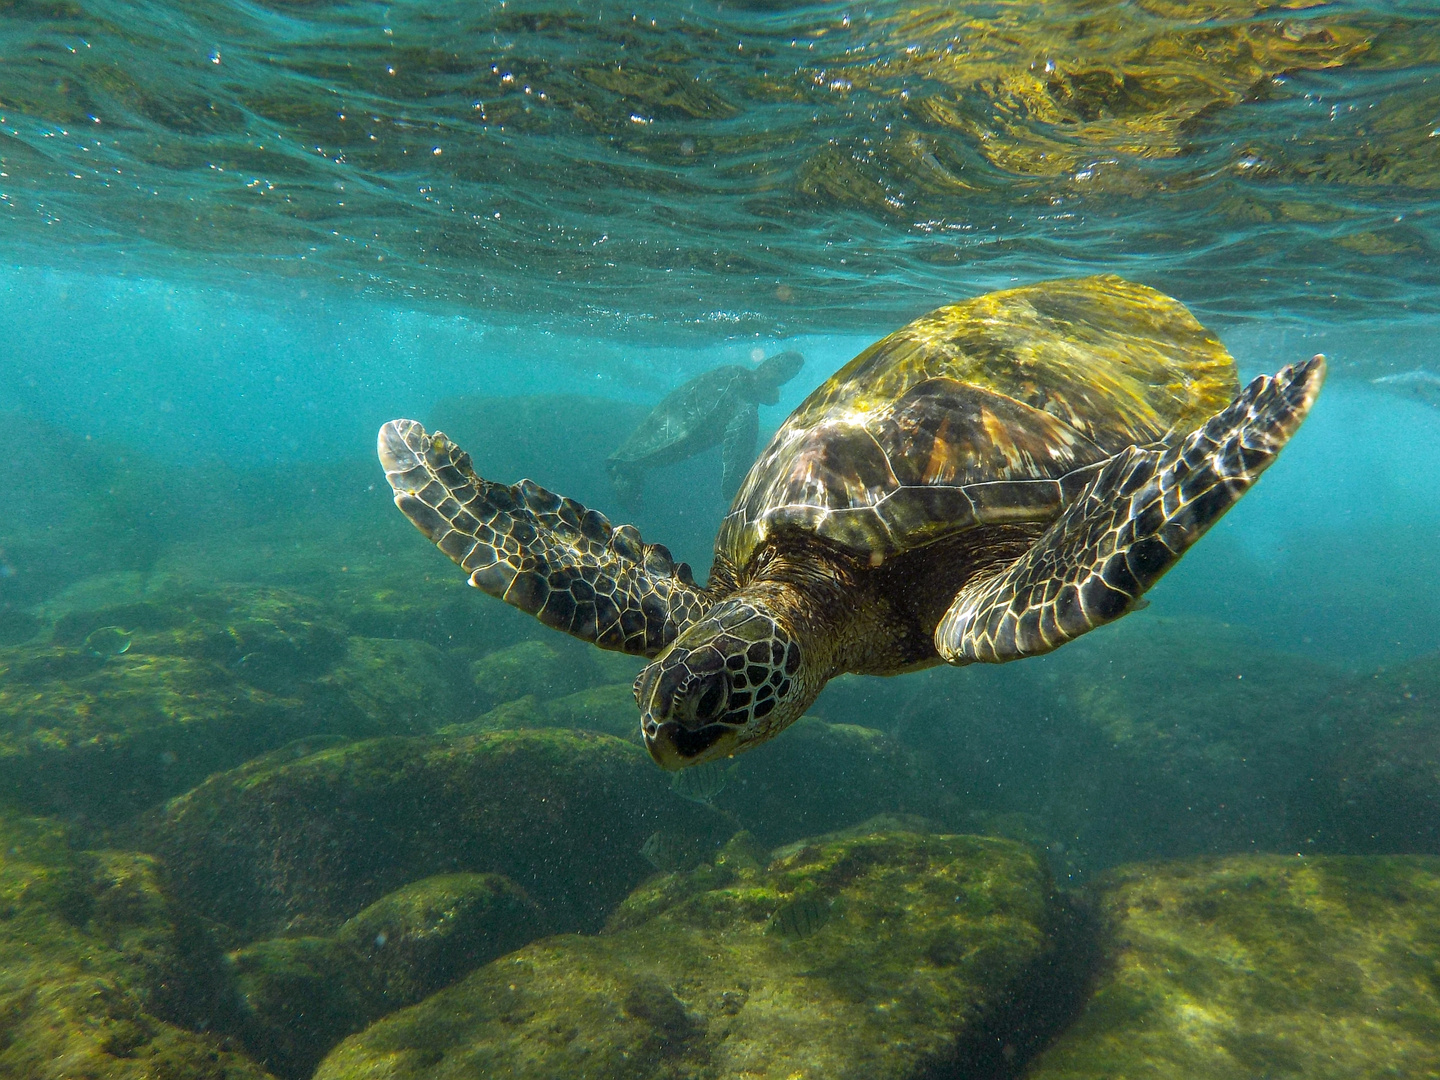 Grüne Meeresschildkröte am Ufer von Maui